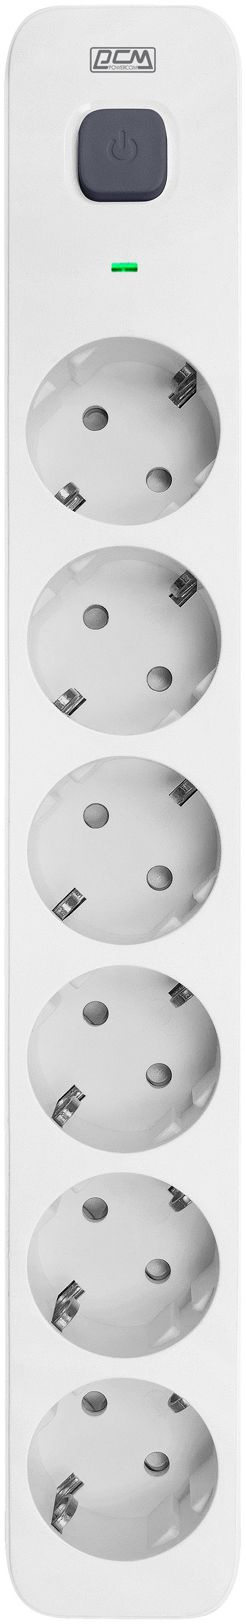 Сетевой фильтр Powercom SP-06W 1.8м (6 розеток) белый/серый (коробка)